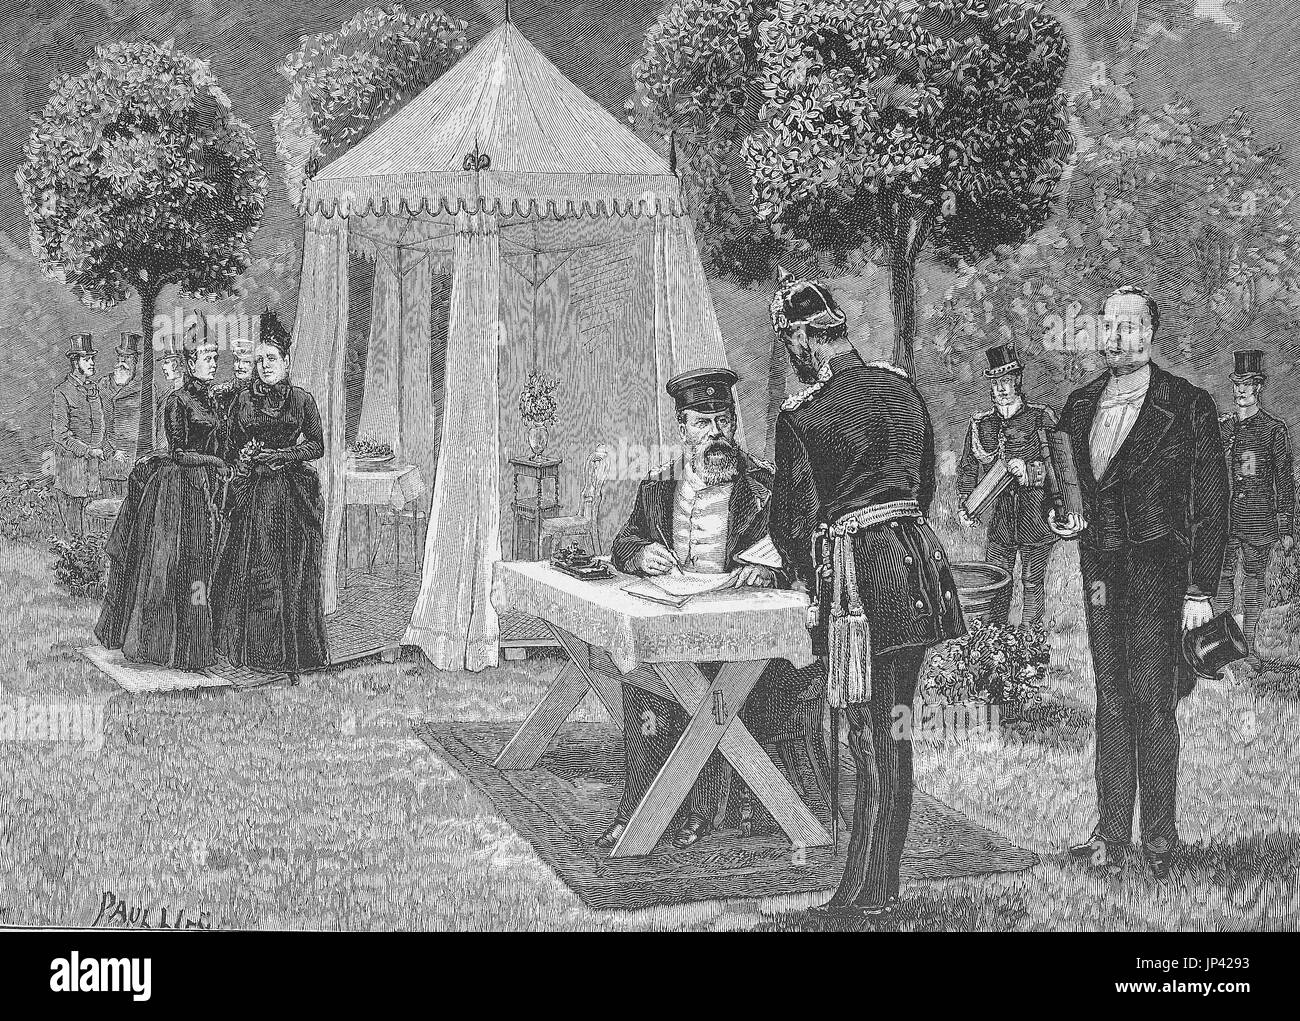 L'Empereur Heinrich avant que son parti tente, il a signé les documents, dessin original de Paul Frichti's, l'Allemagne, l'amélioration numérique reproduction d'une gravure sur bois à partir de la publication de l'année 1888 Banque D'Images